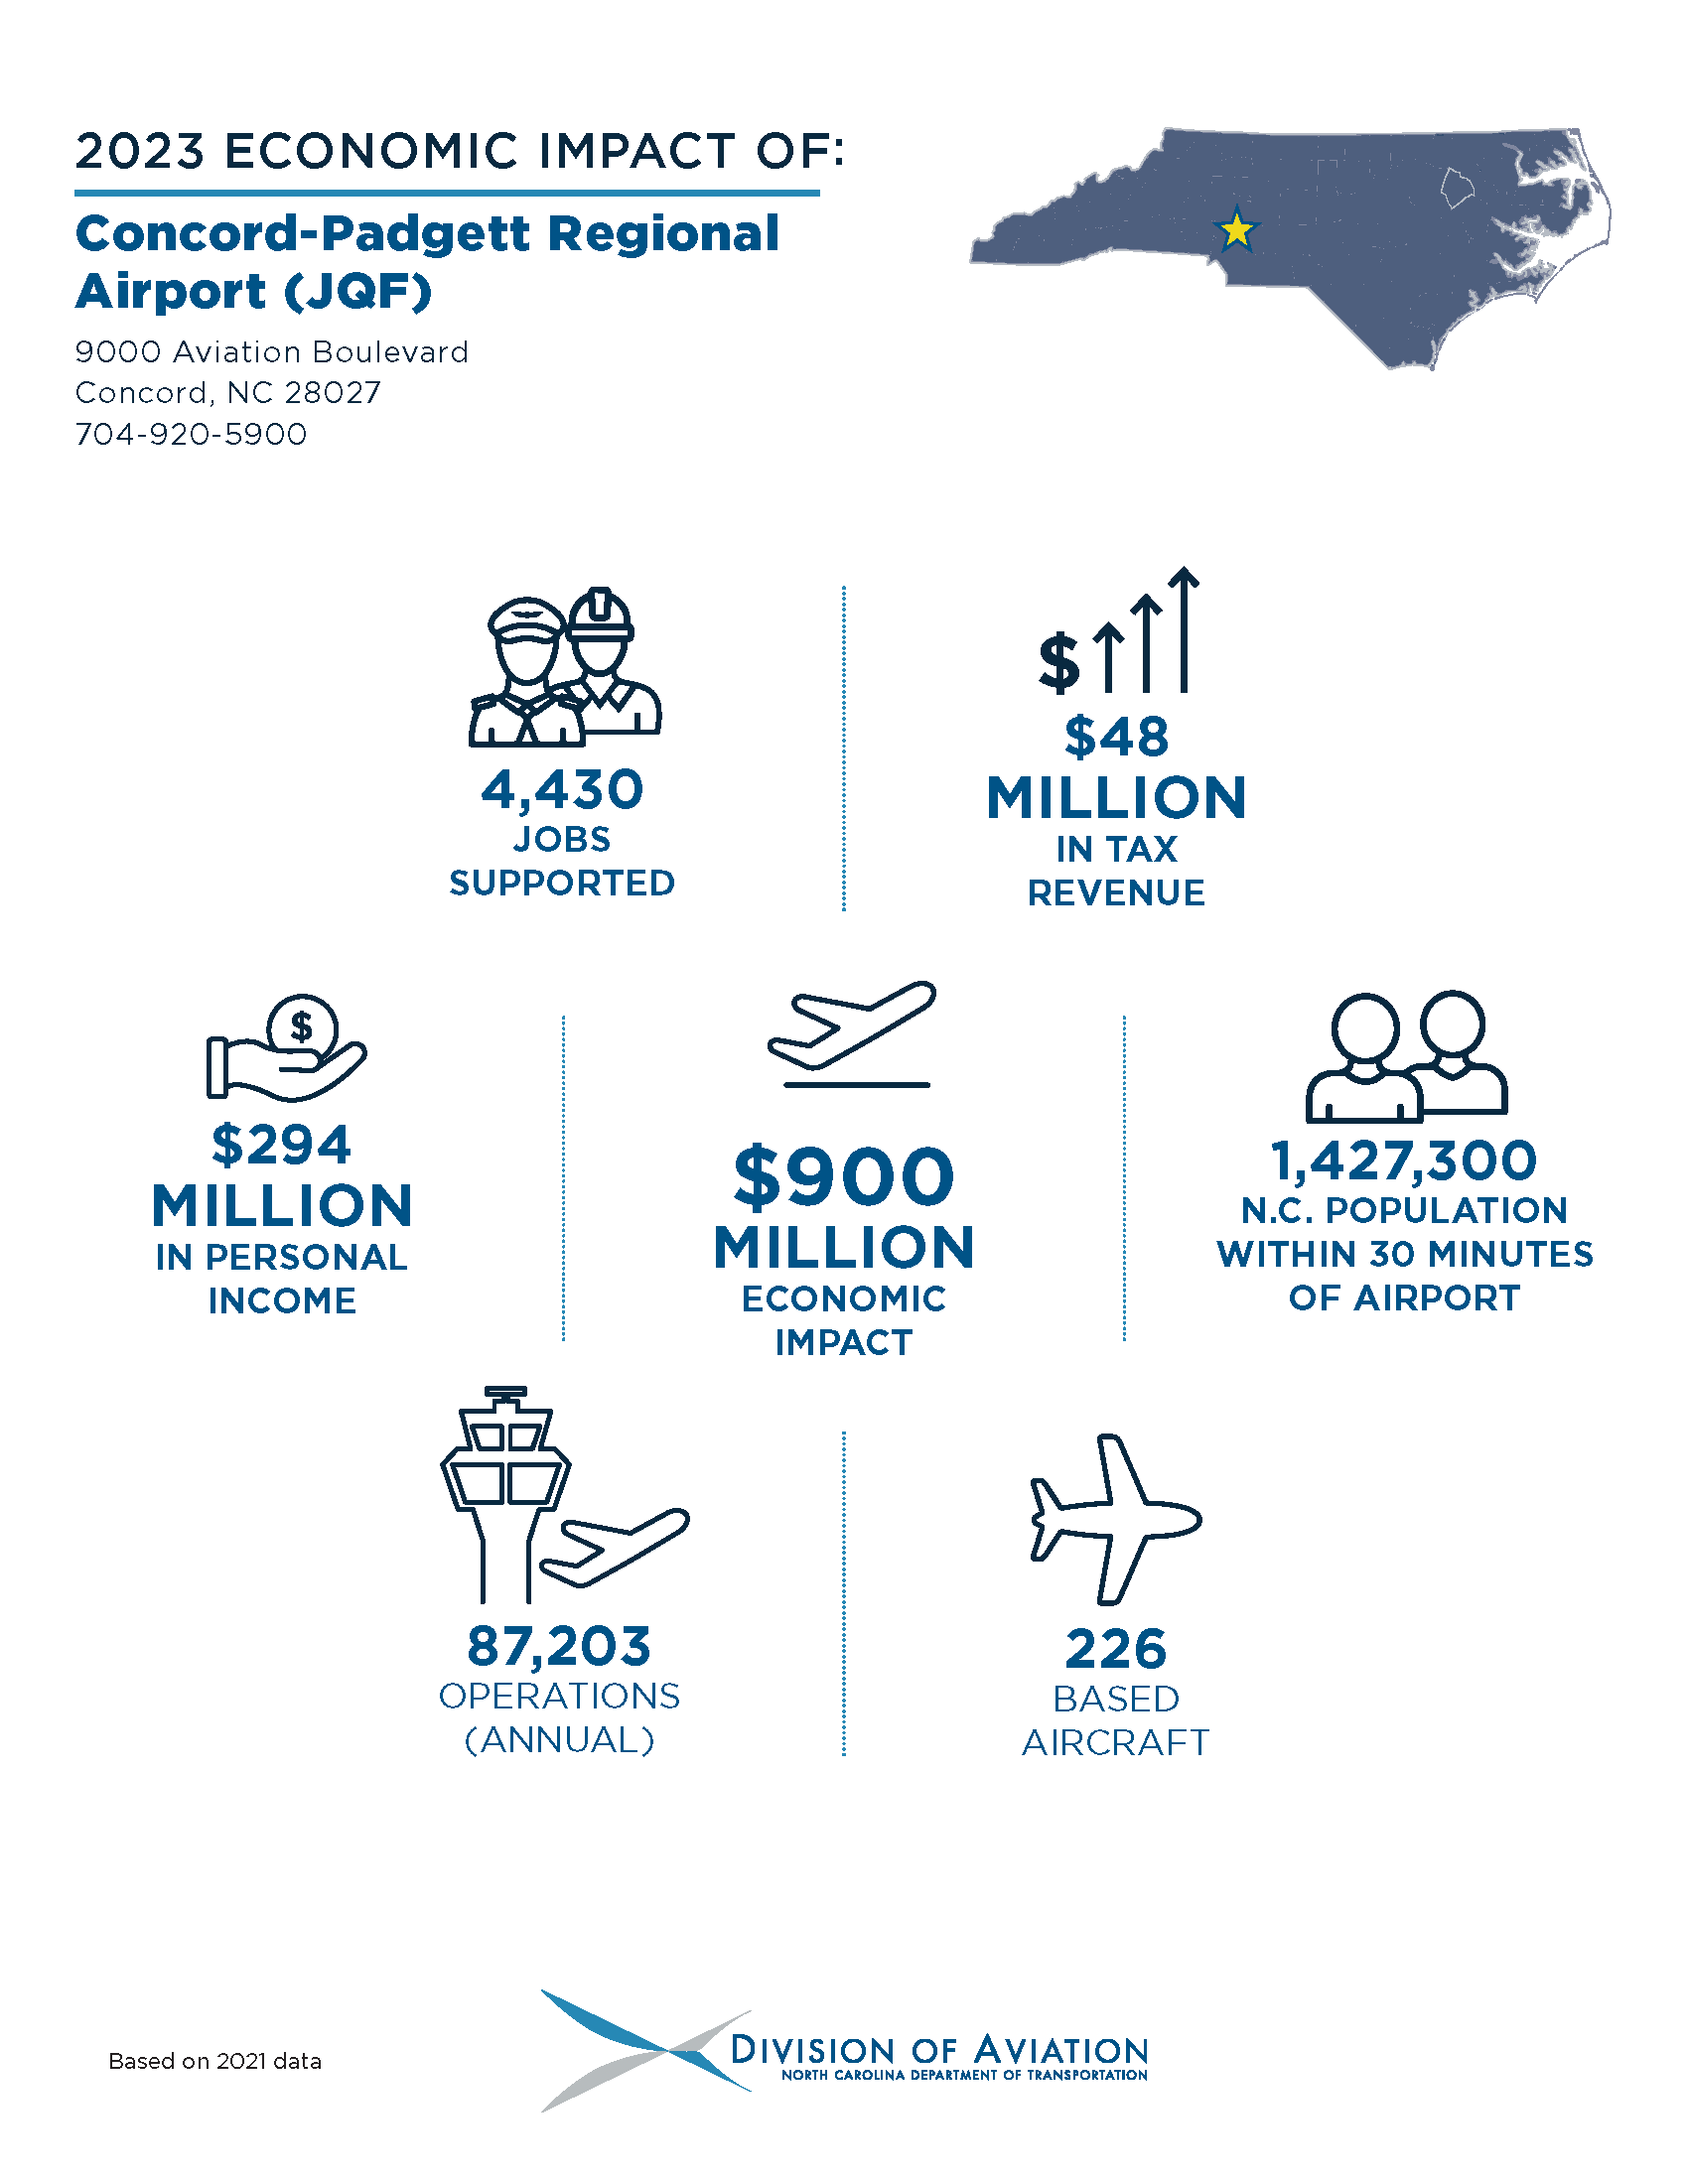 Concord-Padgett Regional Airport Economic Impact Statistics Graphic